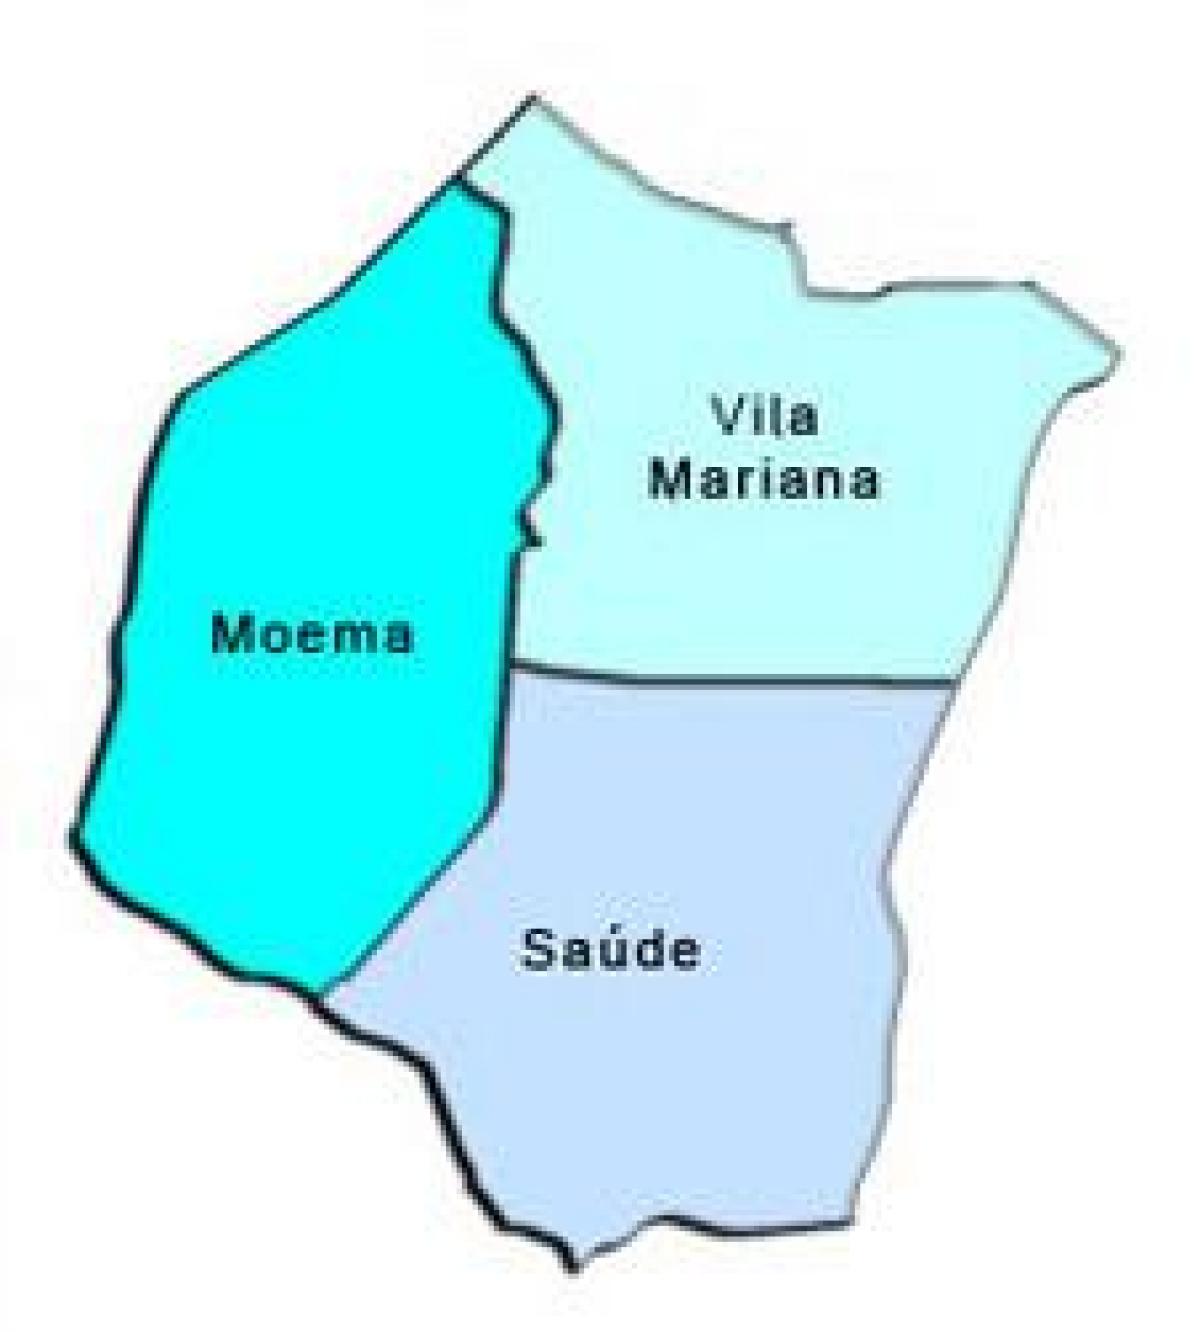 Peta Vila Mariana sub-prefecture